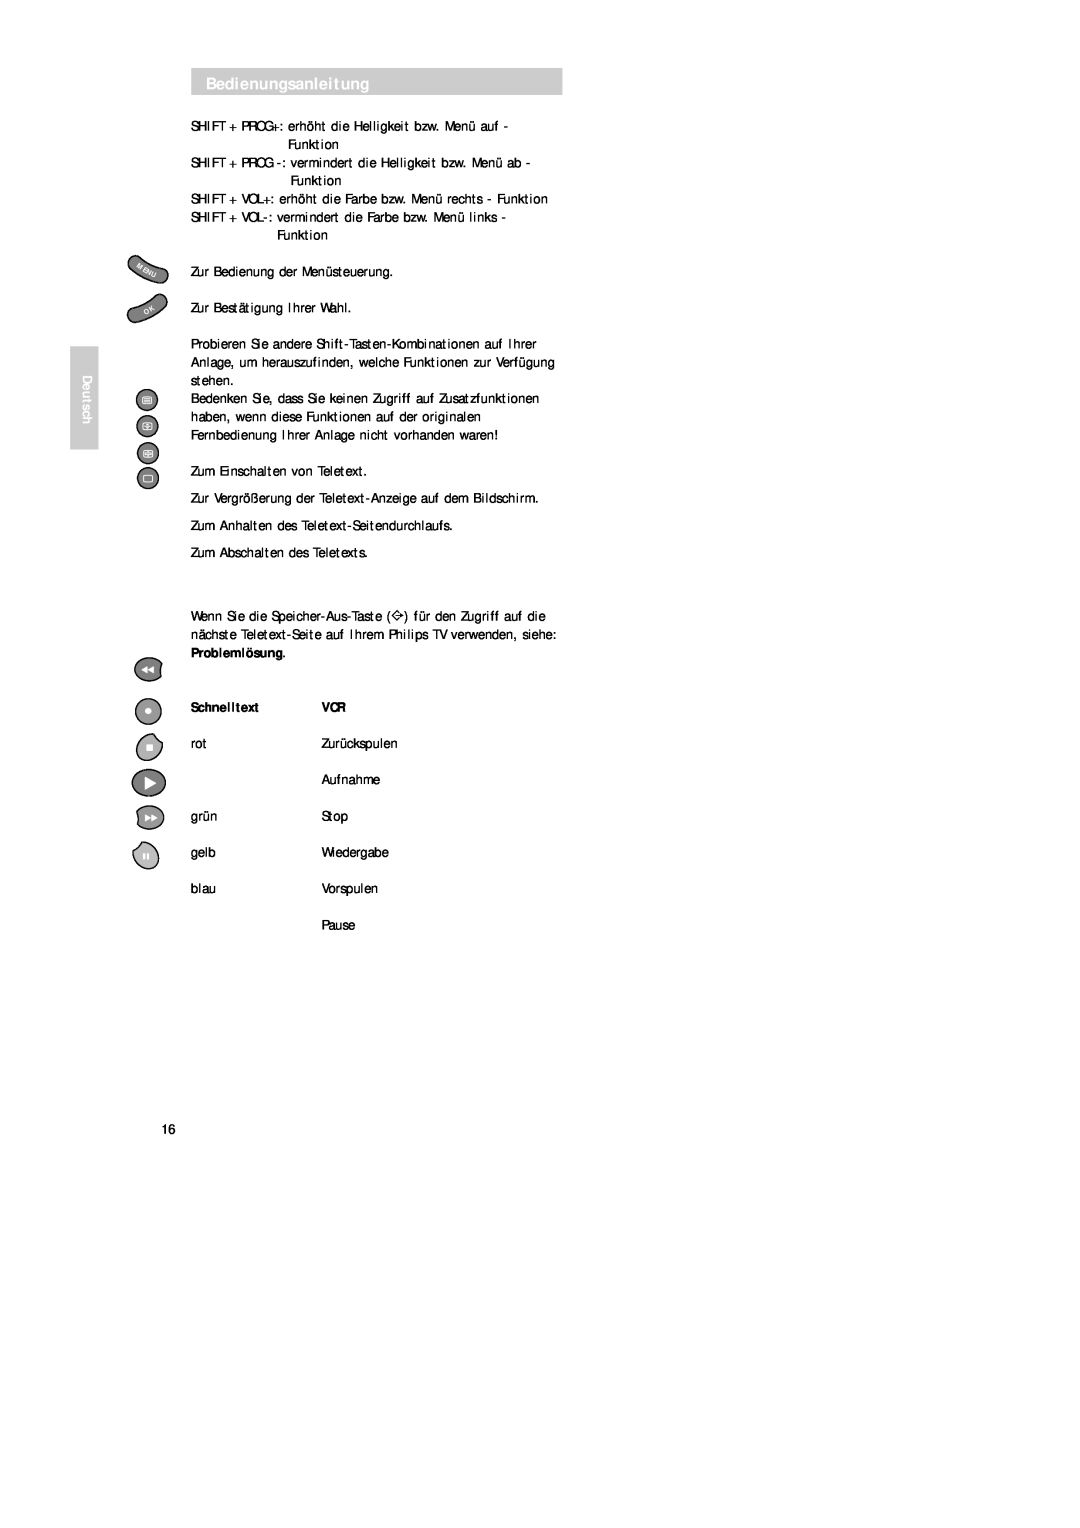 Philips SBC RU 520 manual Deutsch, Schnelltext VCR, Bedienungsanleitung 